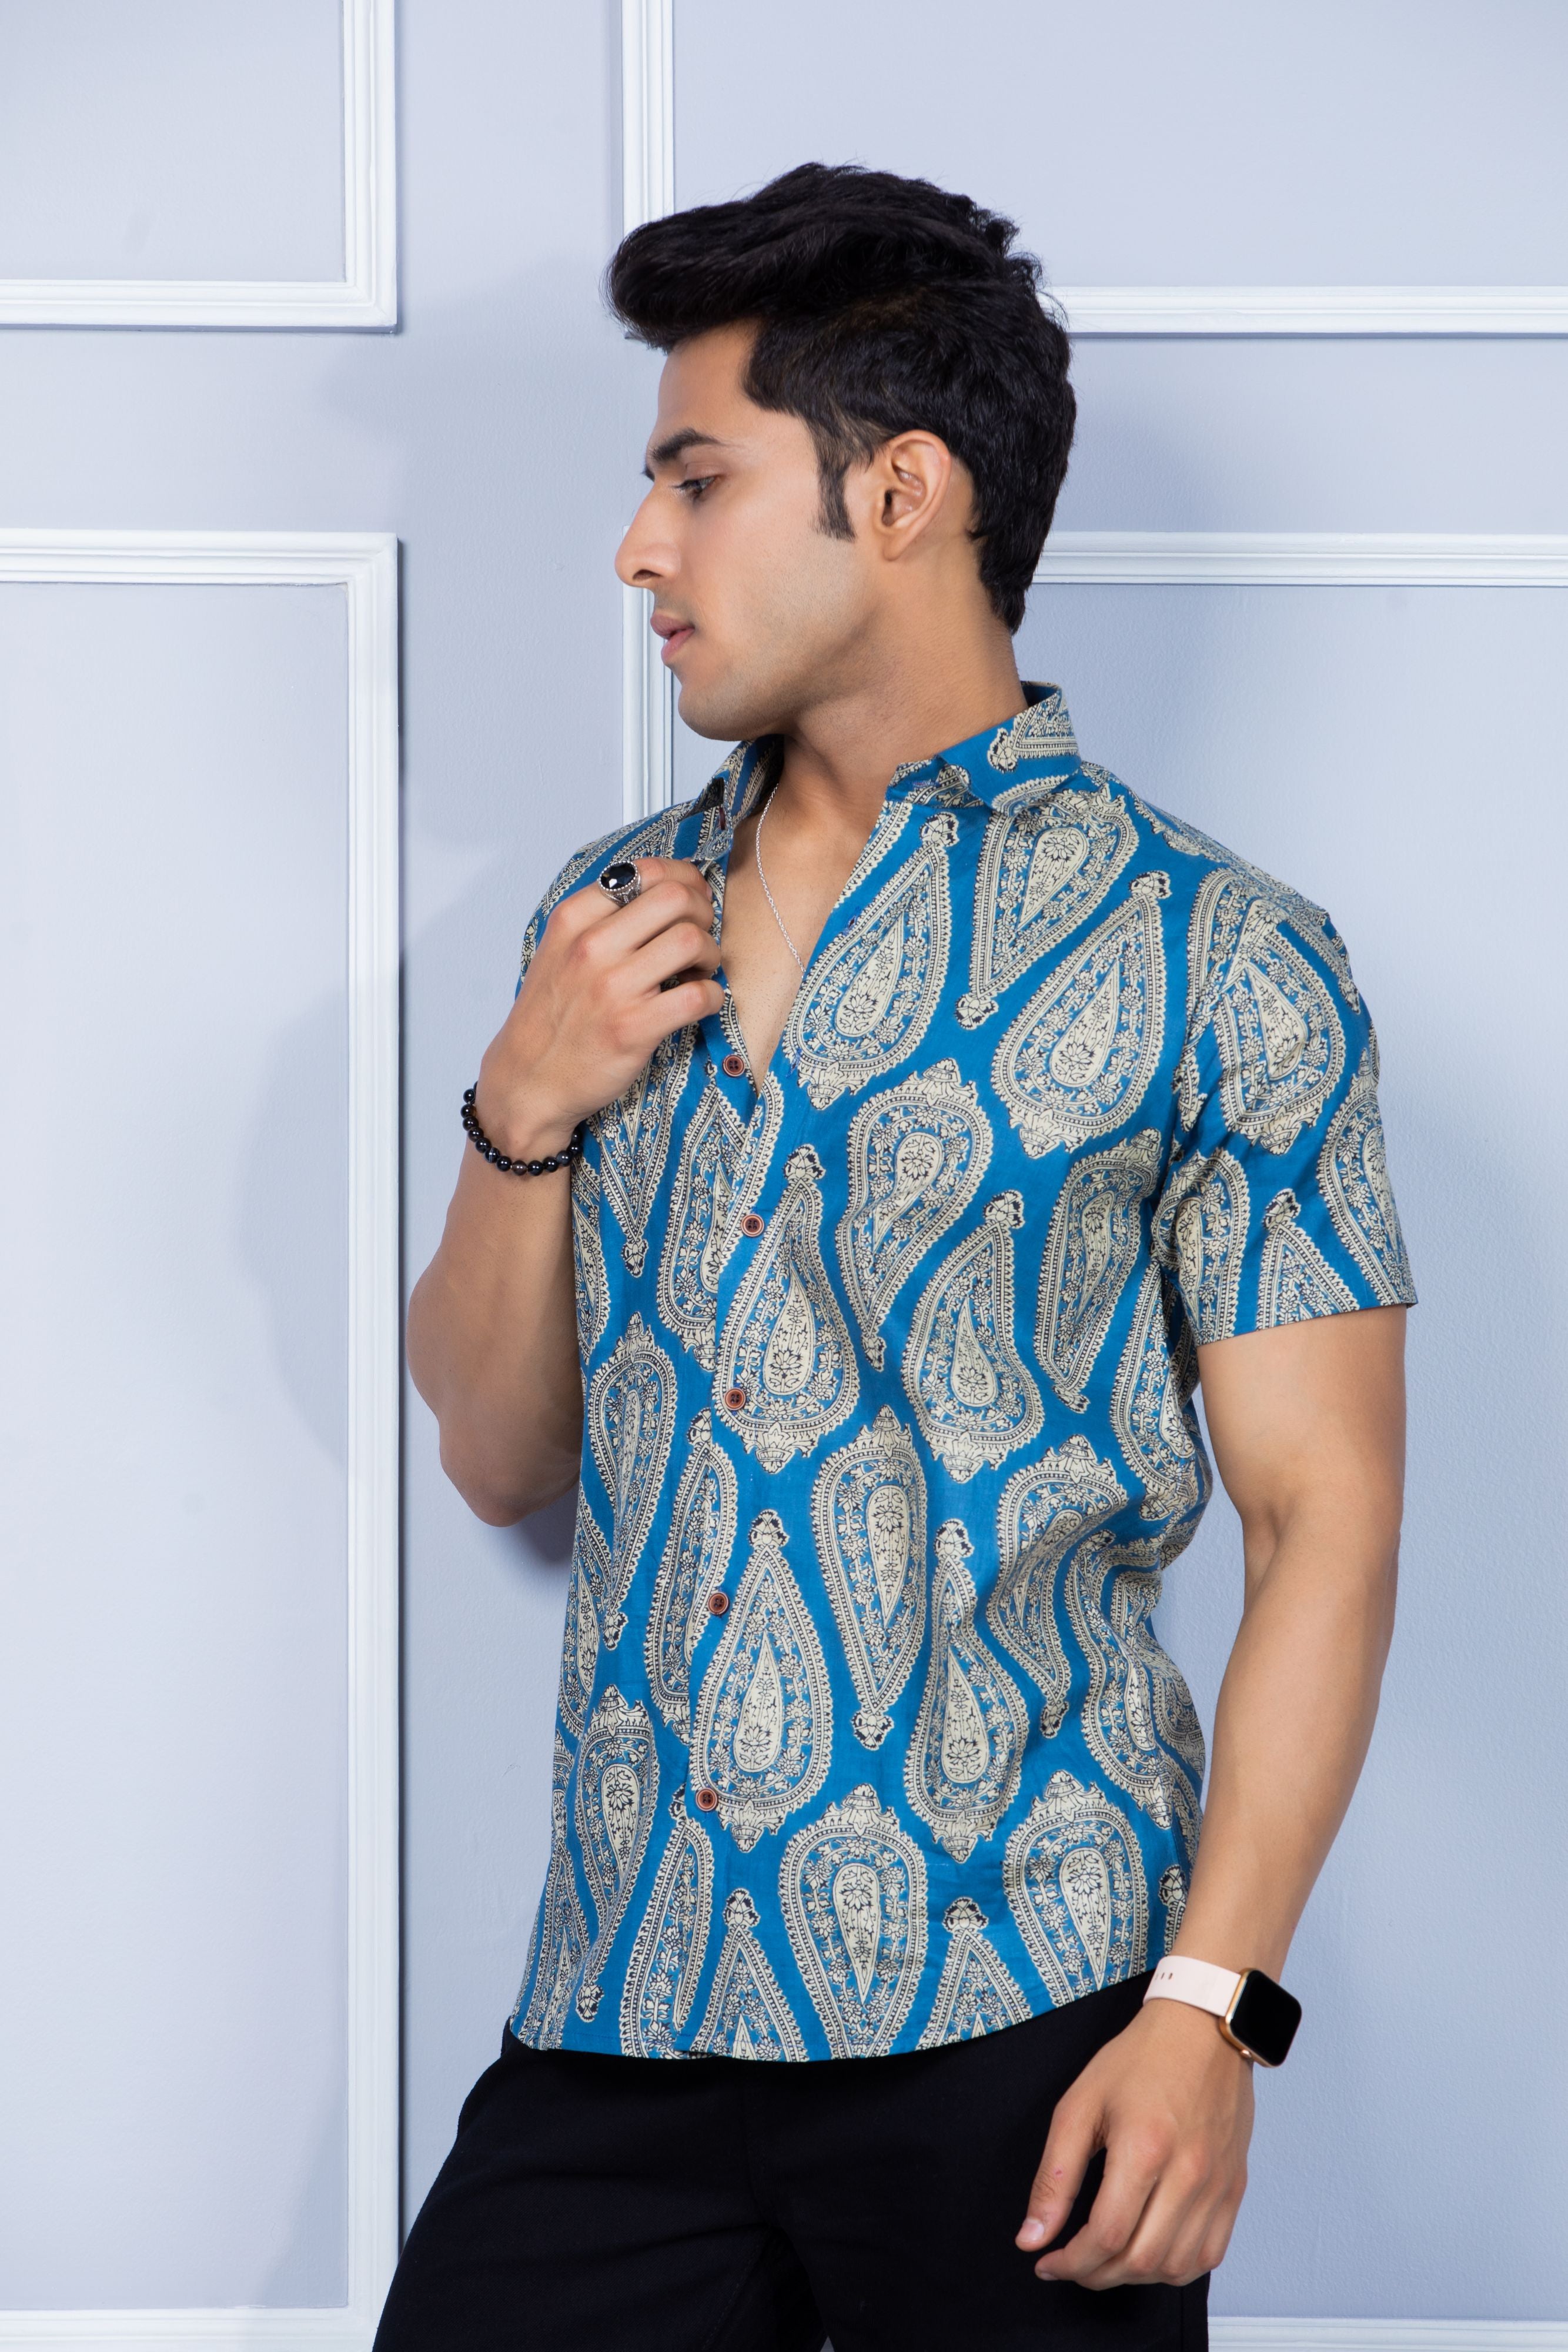 Firangi Yarn Ethnic Floral Printed Cotton Jaipuri Blue Shirt For Men